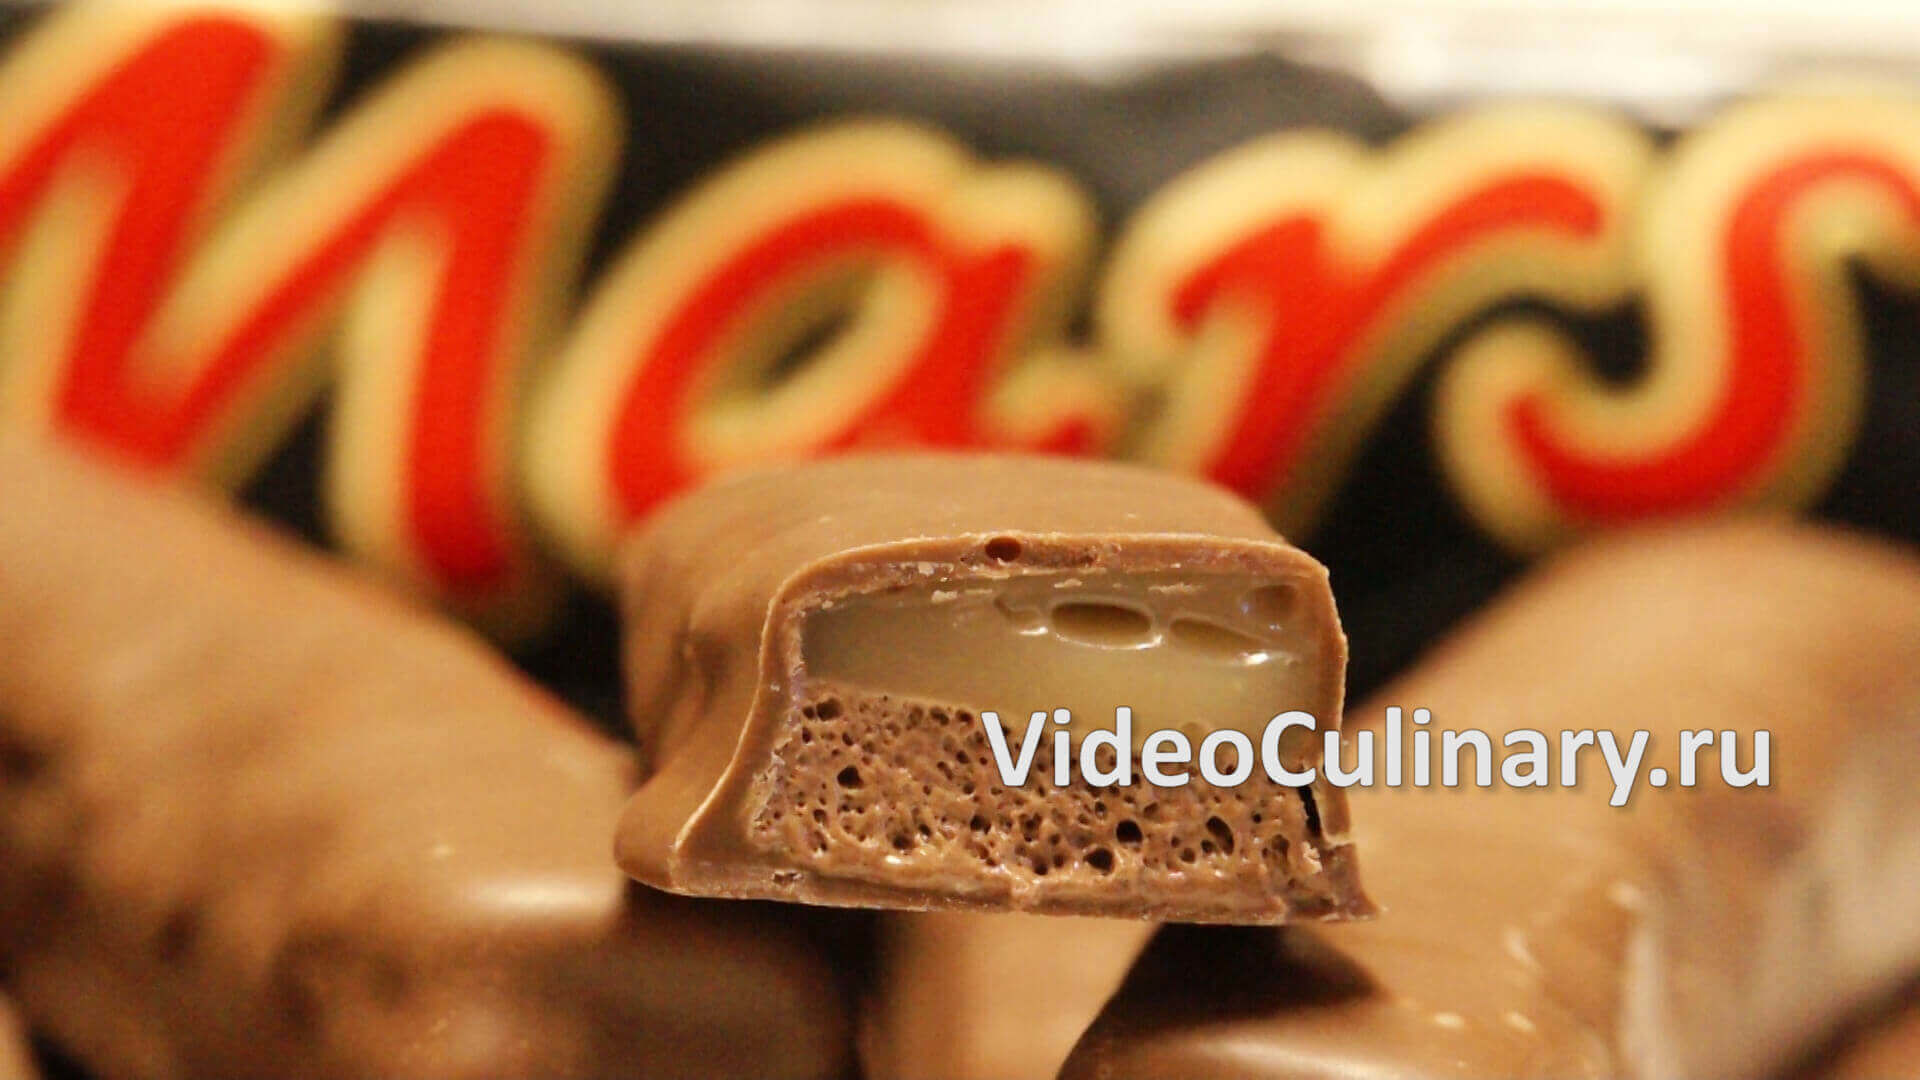 Шоколадный батончик Марс